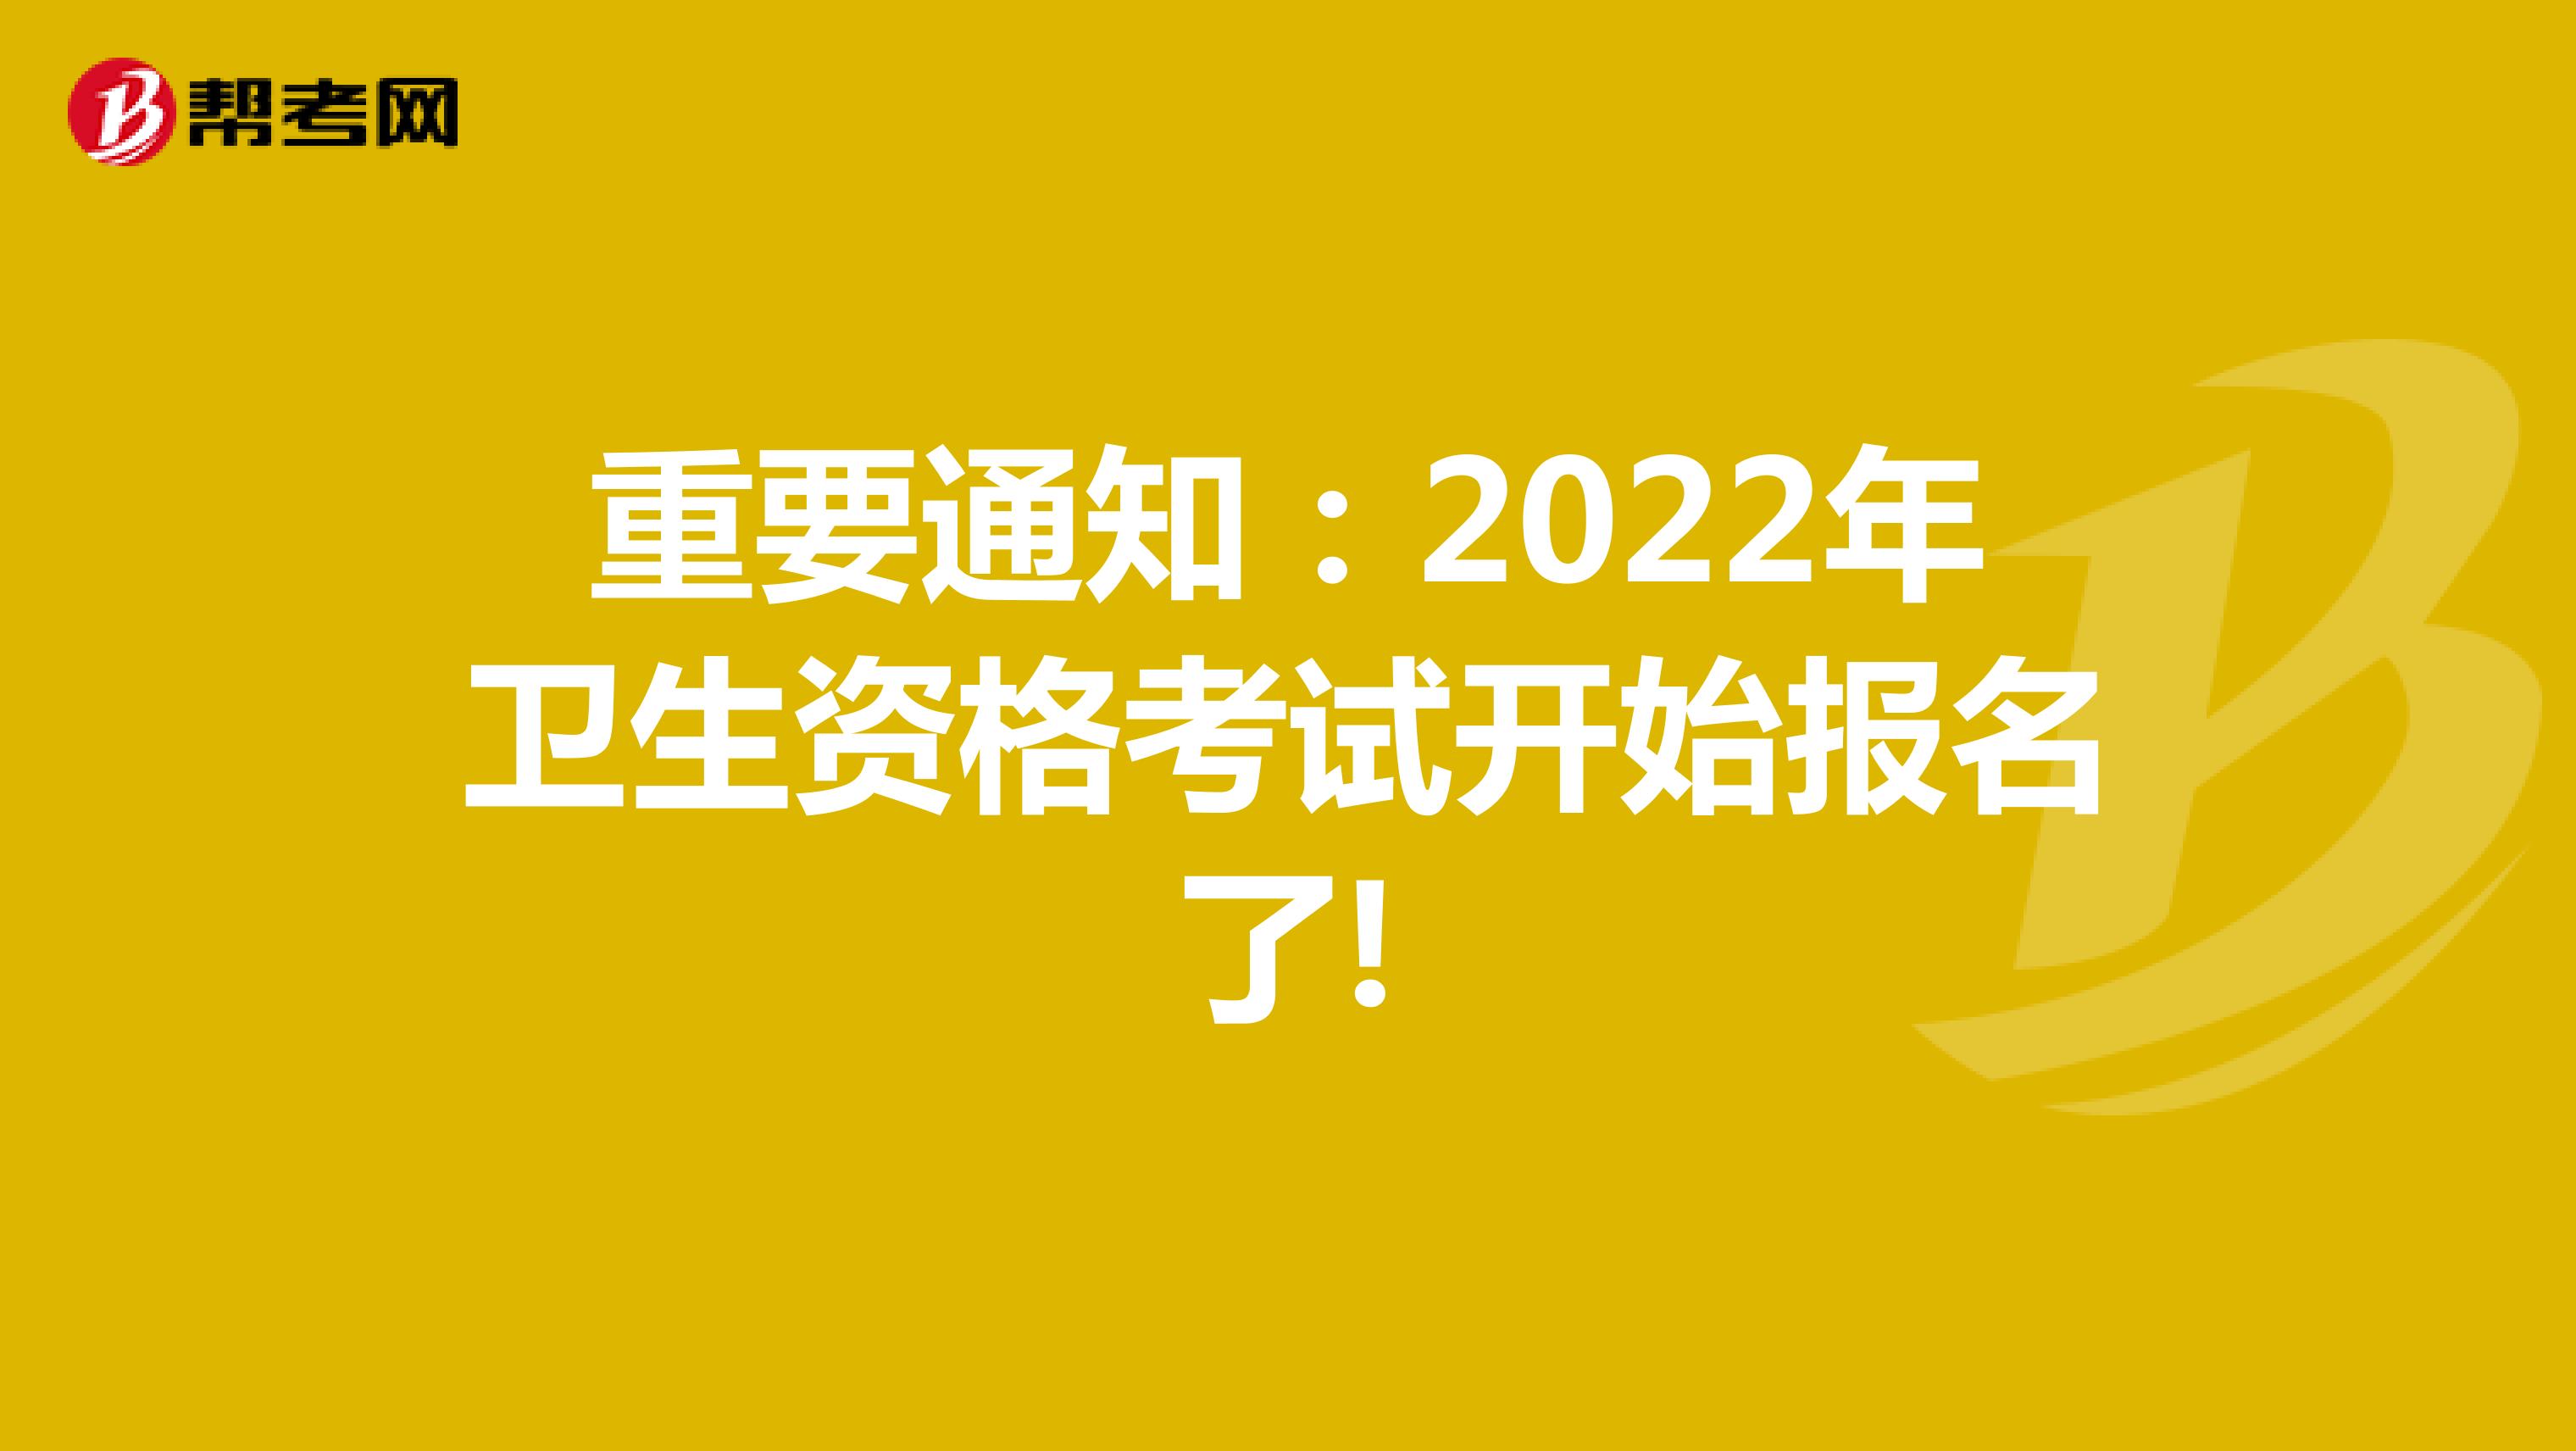 重要通知：2022年卫生资格考试开始报名了!